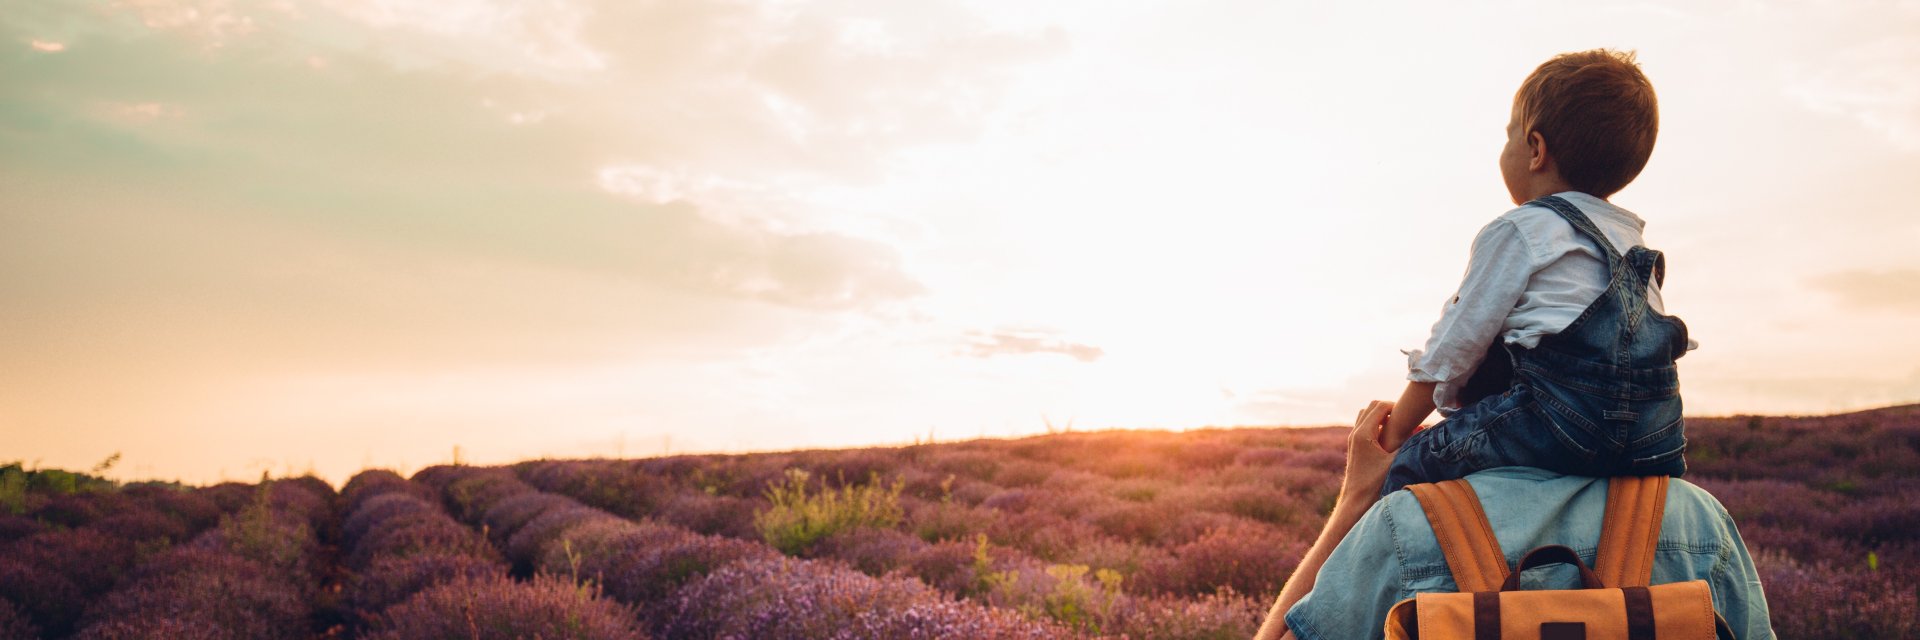 Boy in a field of lavender